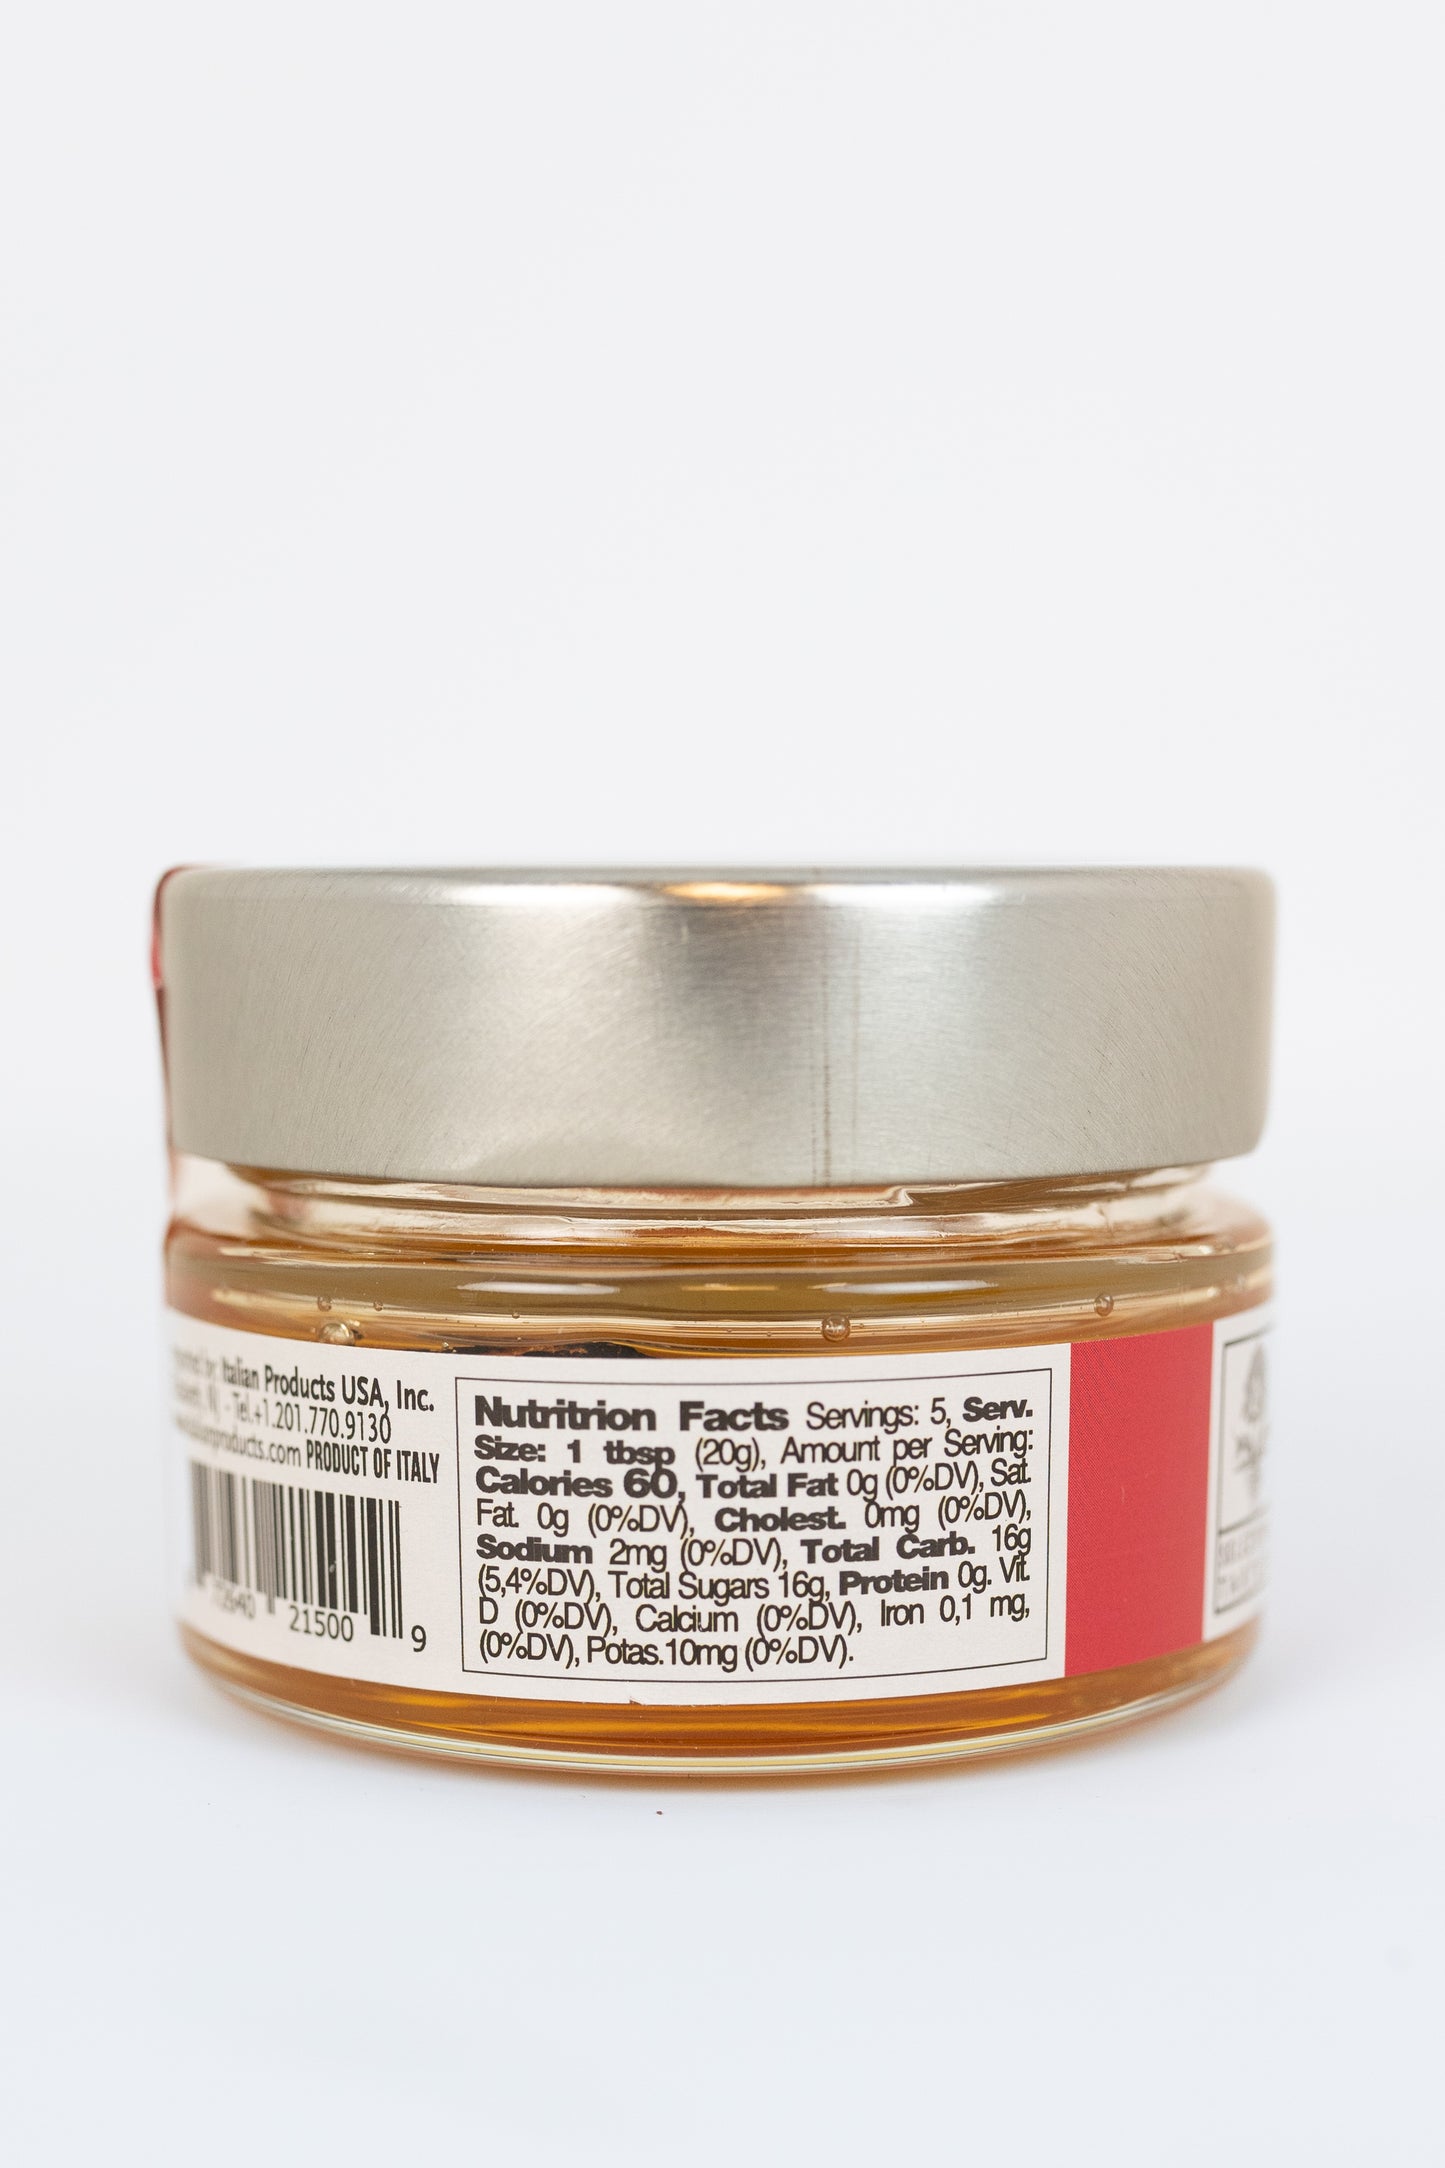 Black Truffle Honey - 3.2oz/100g